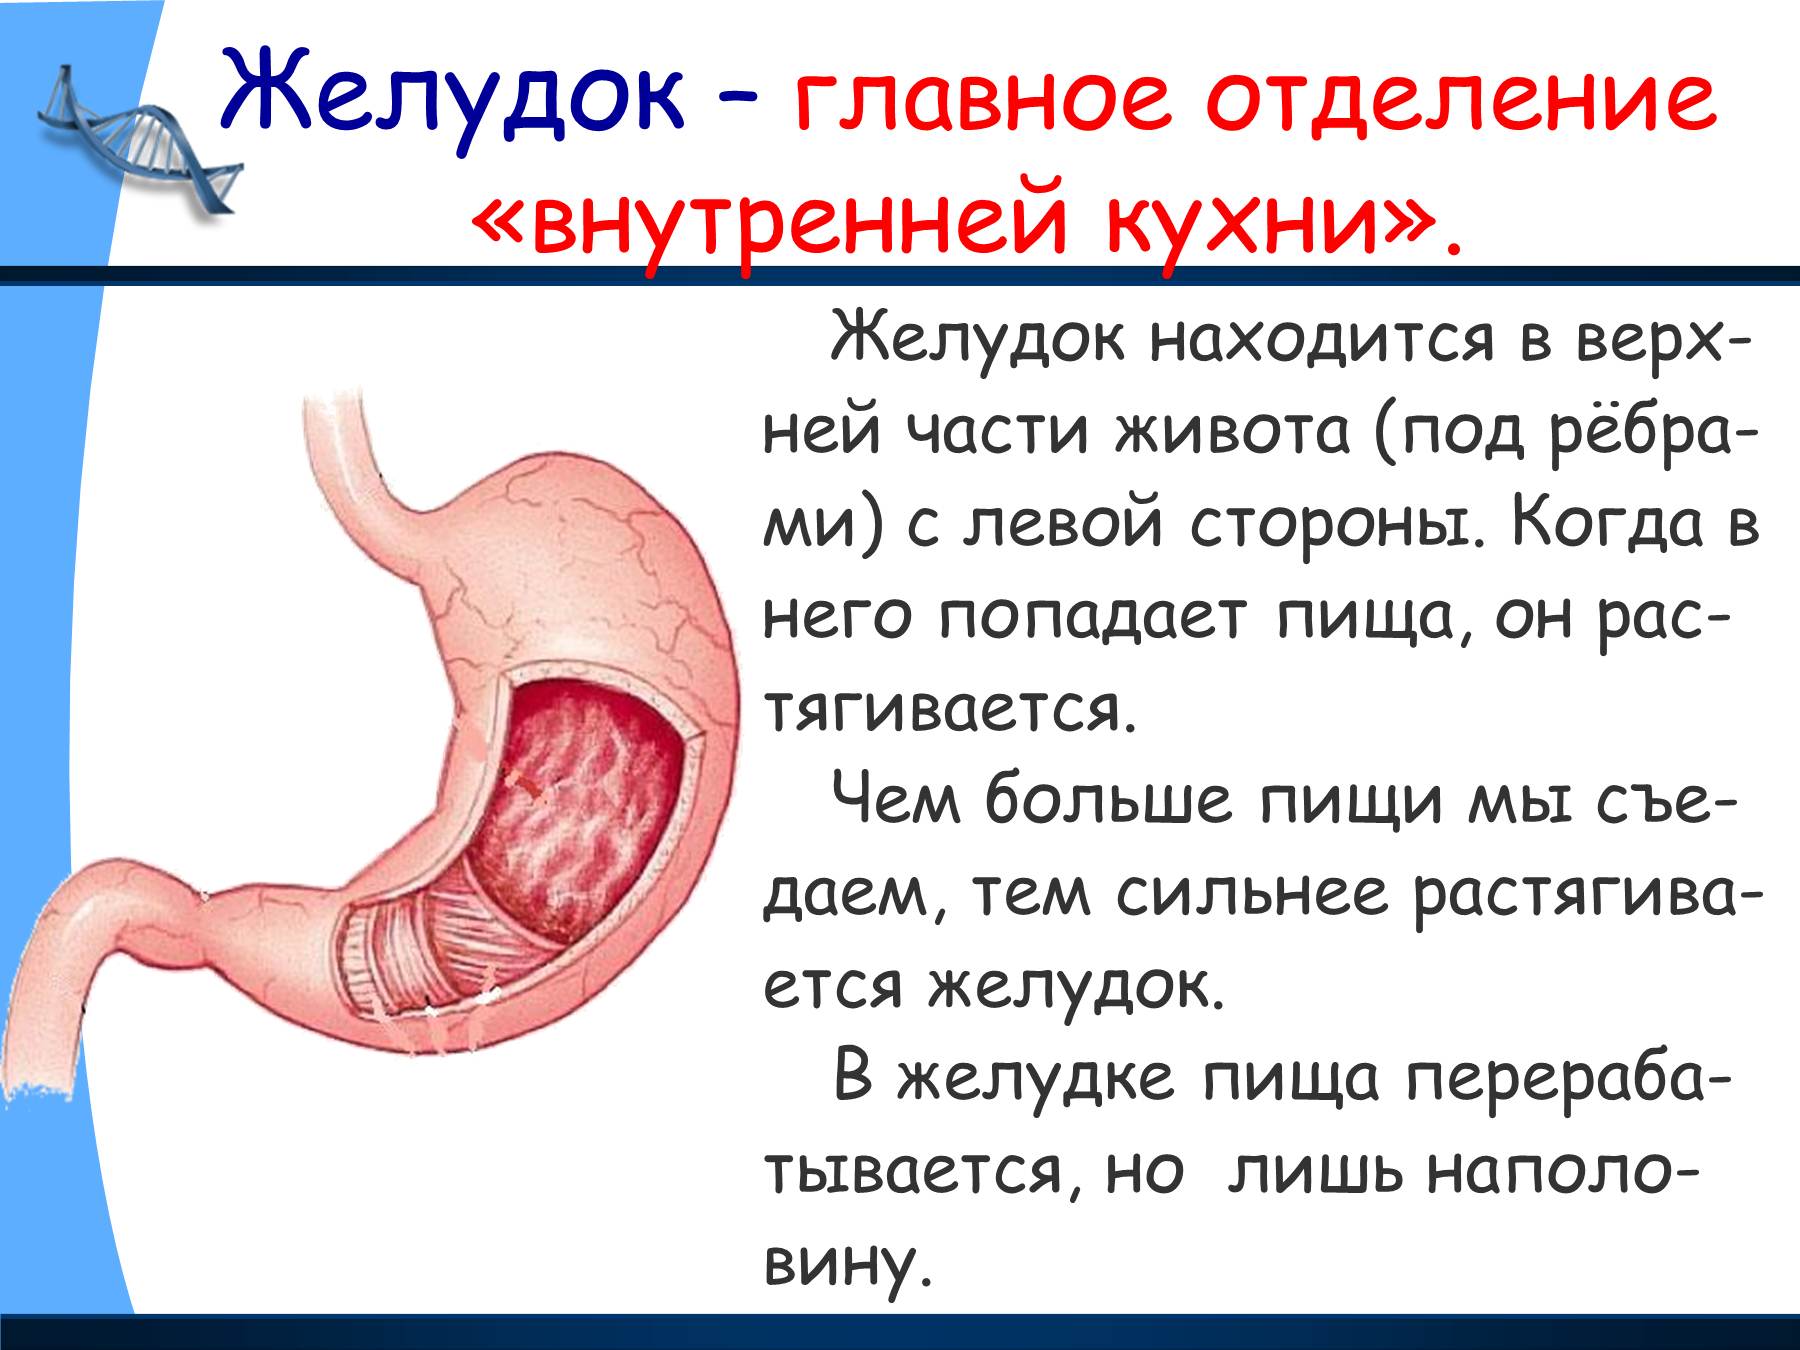 Презентация о желудке человека